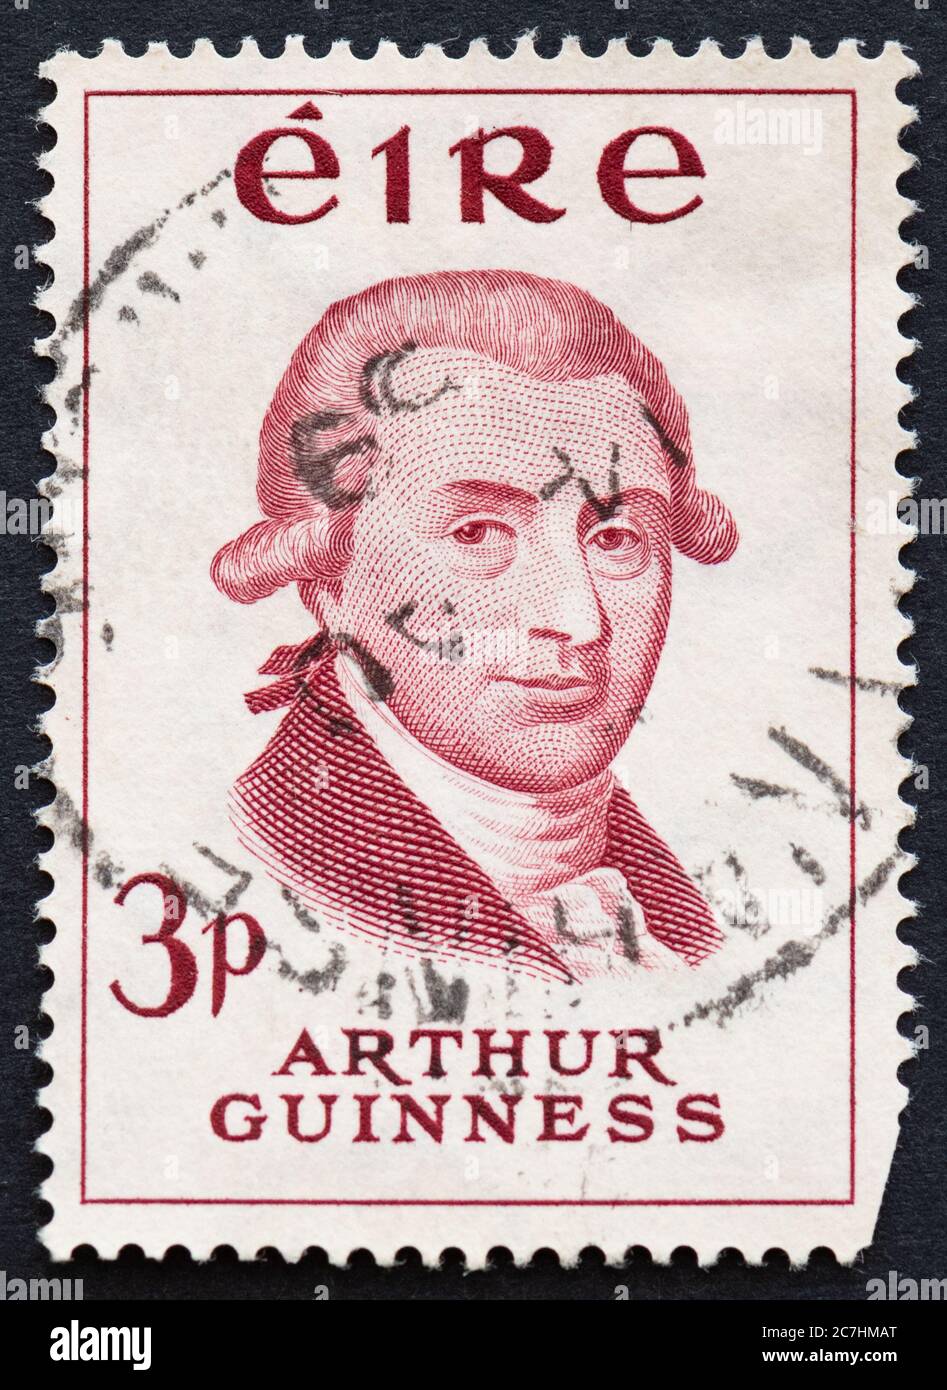 Arthur Guinness Irland Gedenkmarke 3p ausgestellt in 1959 für die Guinnes Zweihundertjahrfeier Stockfoto